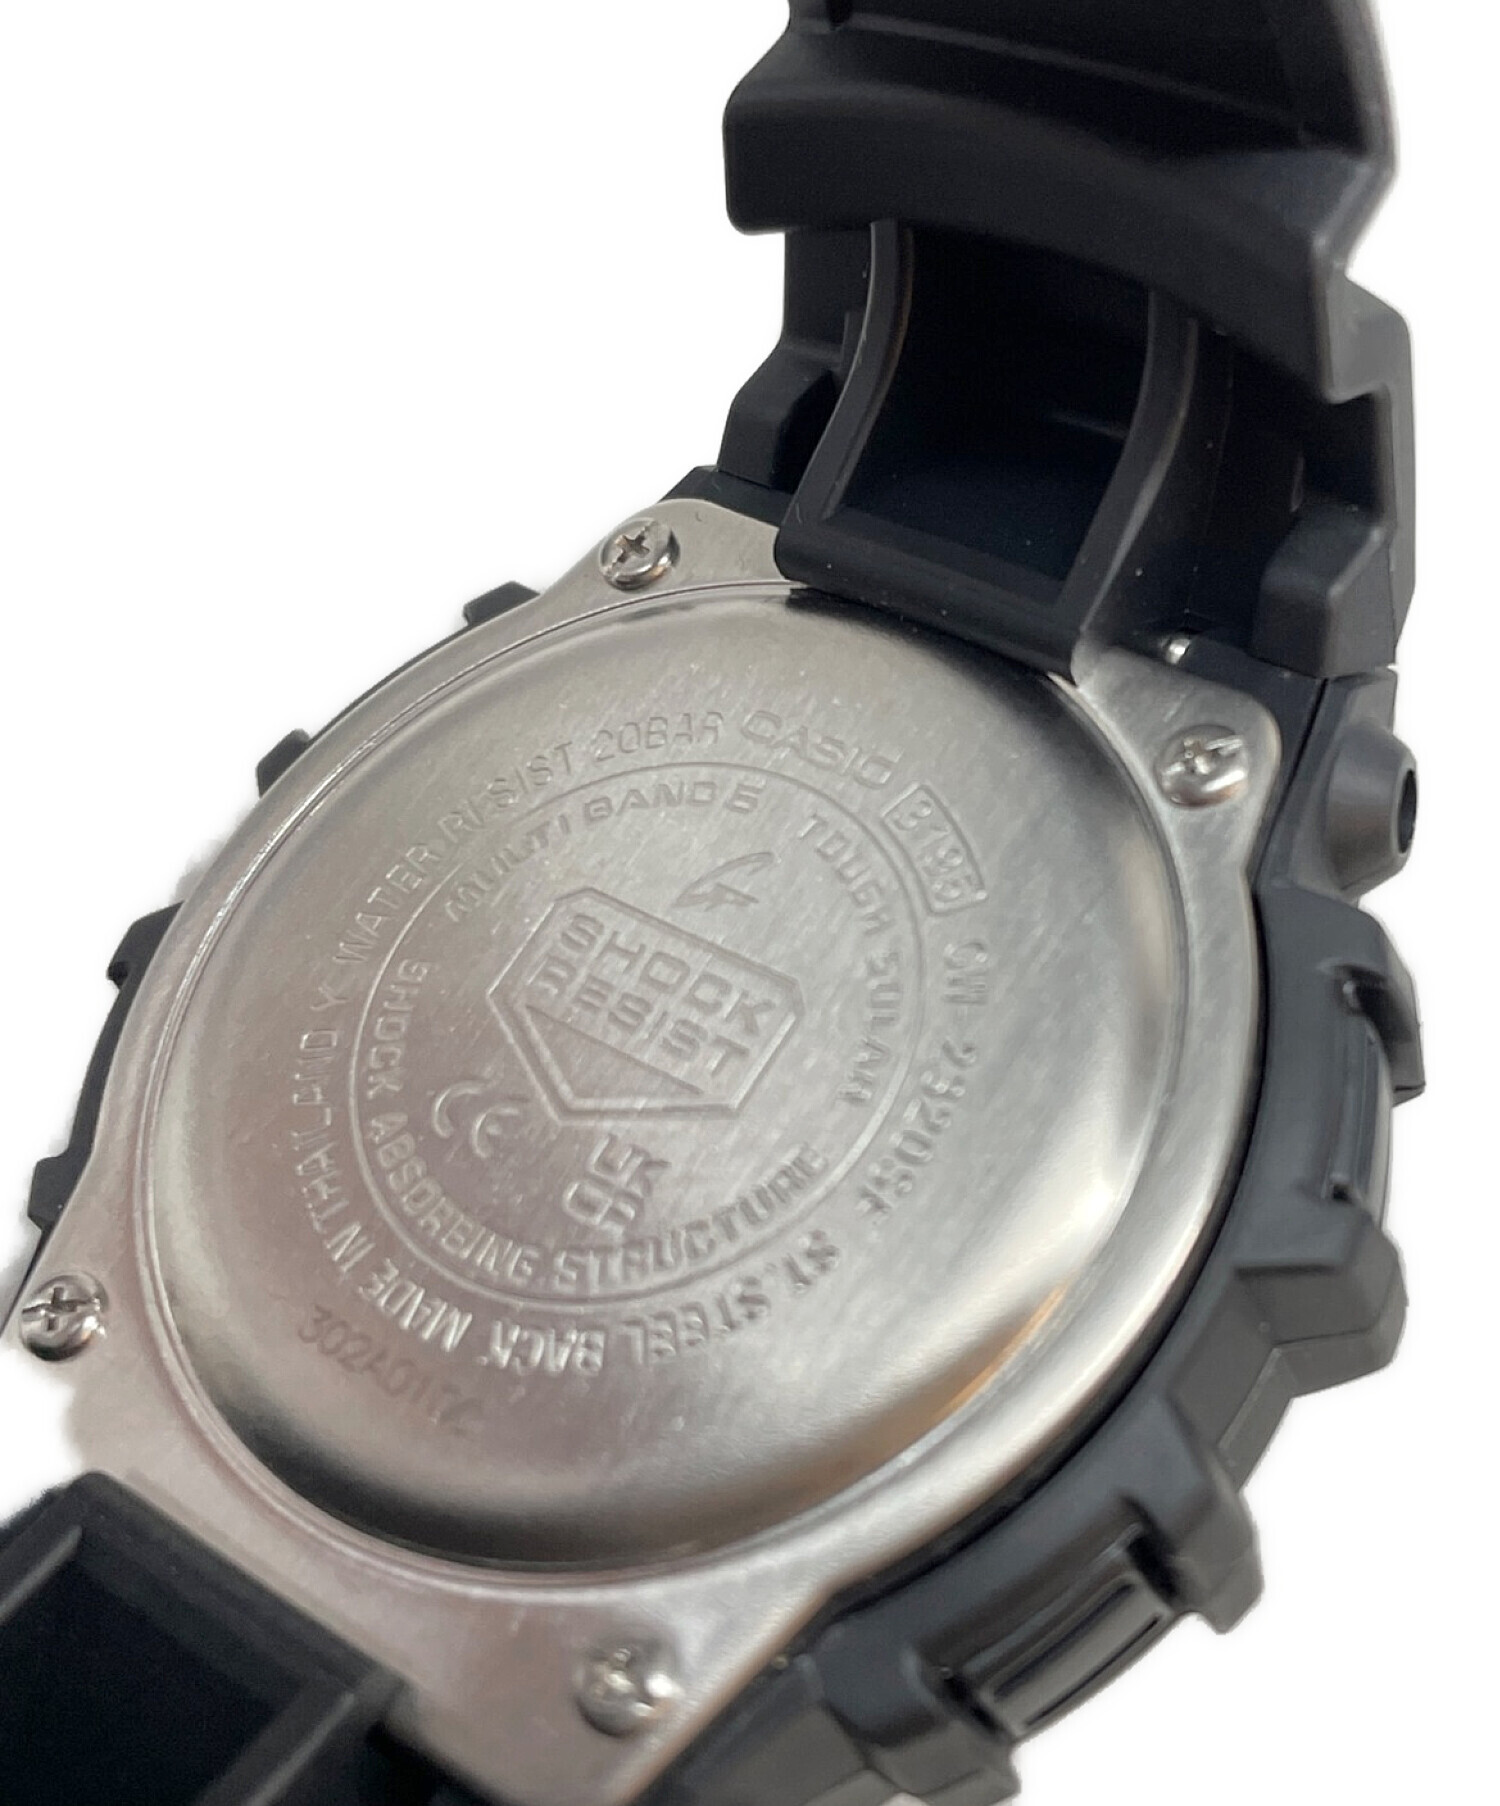 CASIO (カシオ) 腕時計 G-SHOCK 電波ソーラー